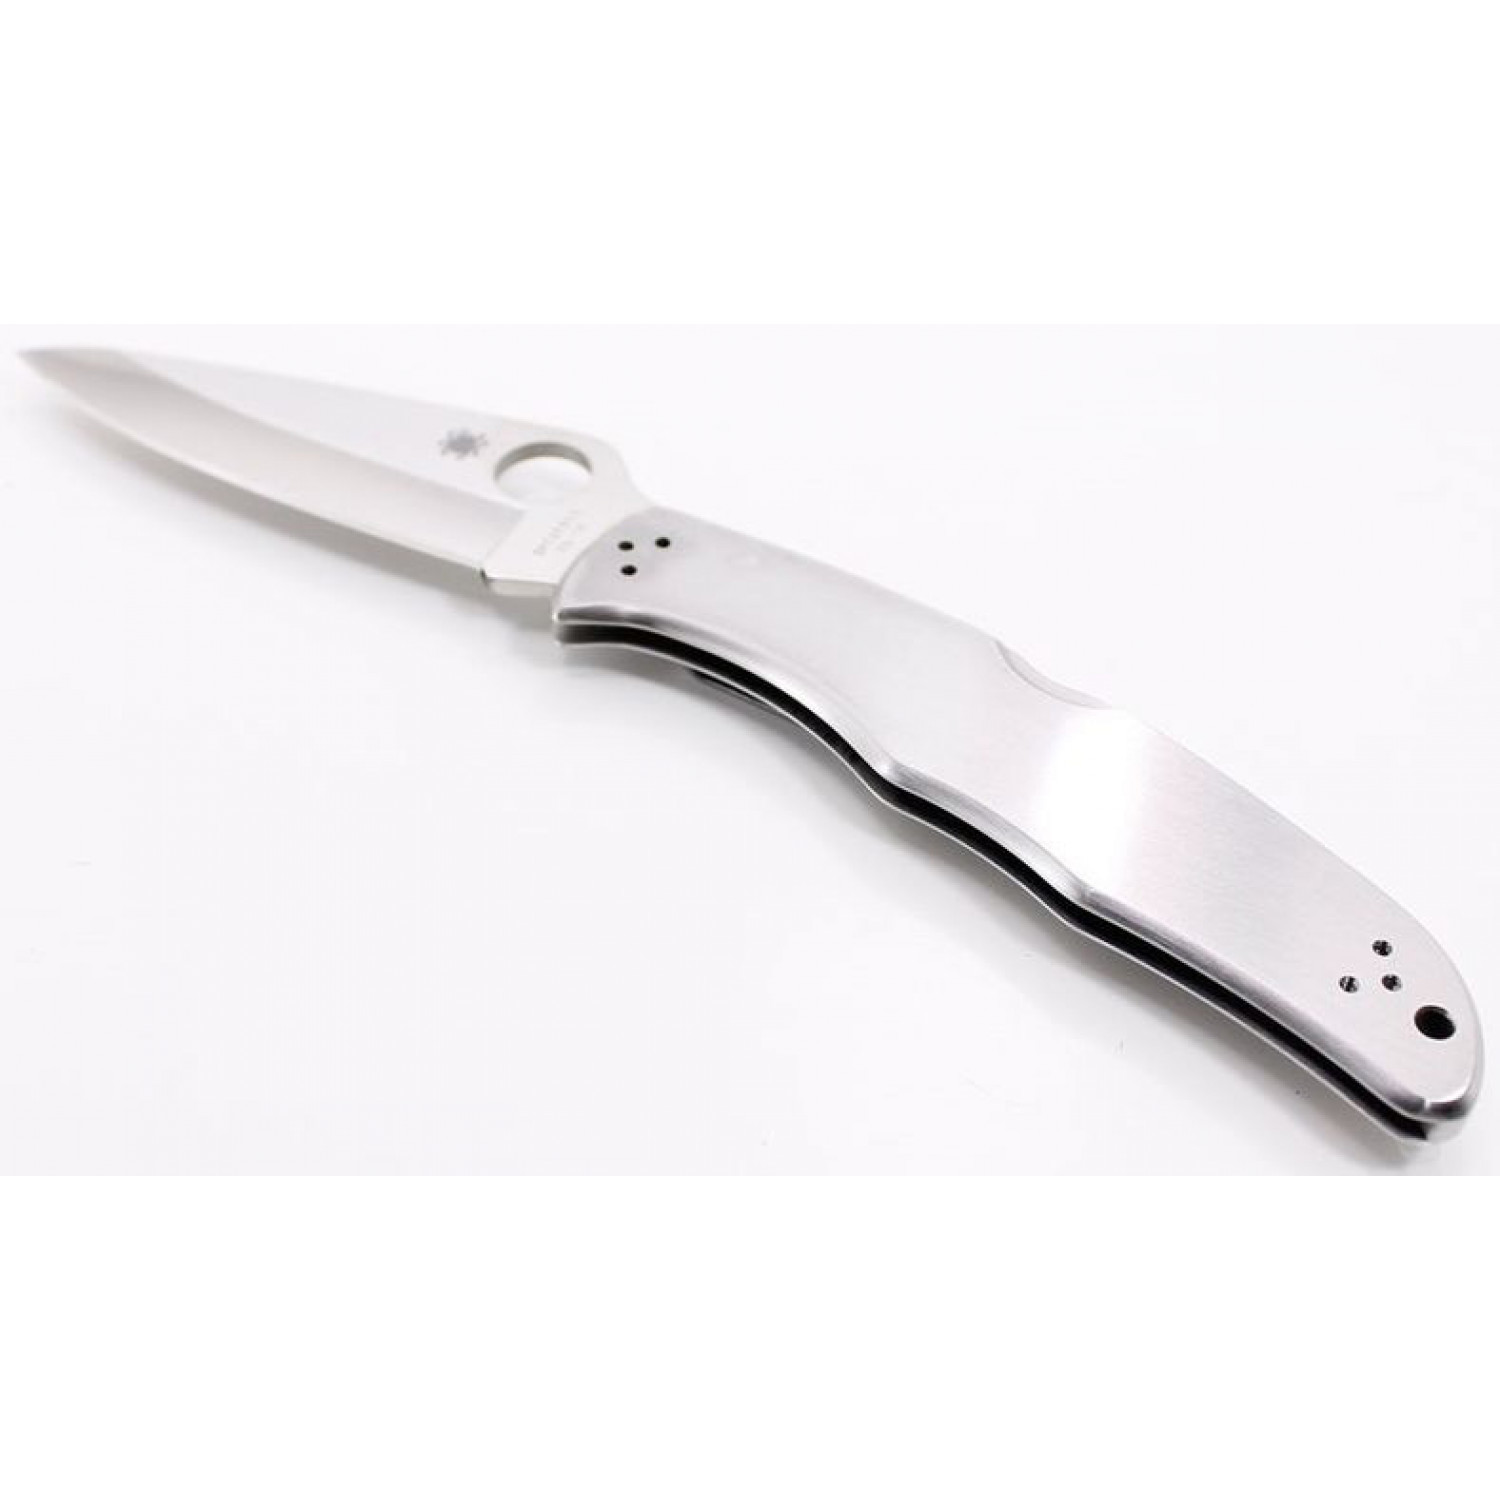 Складной нож Endura 4 - Spyderco 10P, сталь VG-10 Satin Plain, рукоять нержавеющая сталь - фото 5